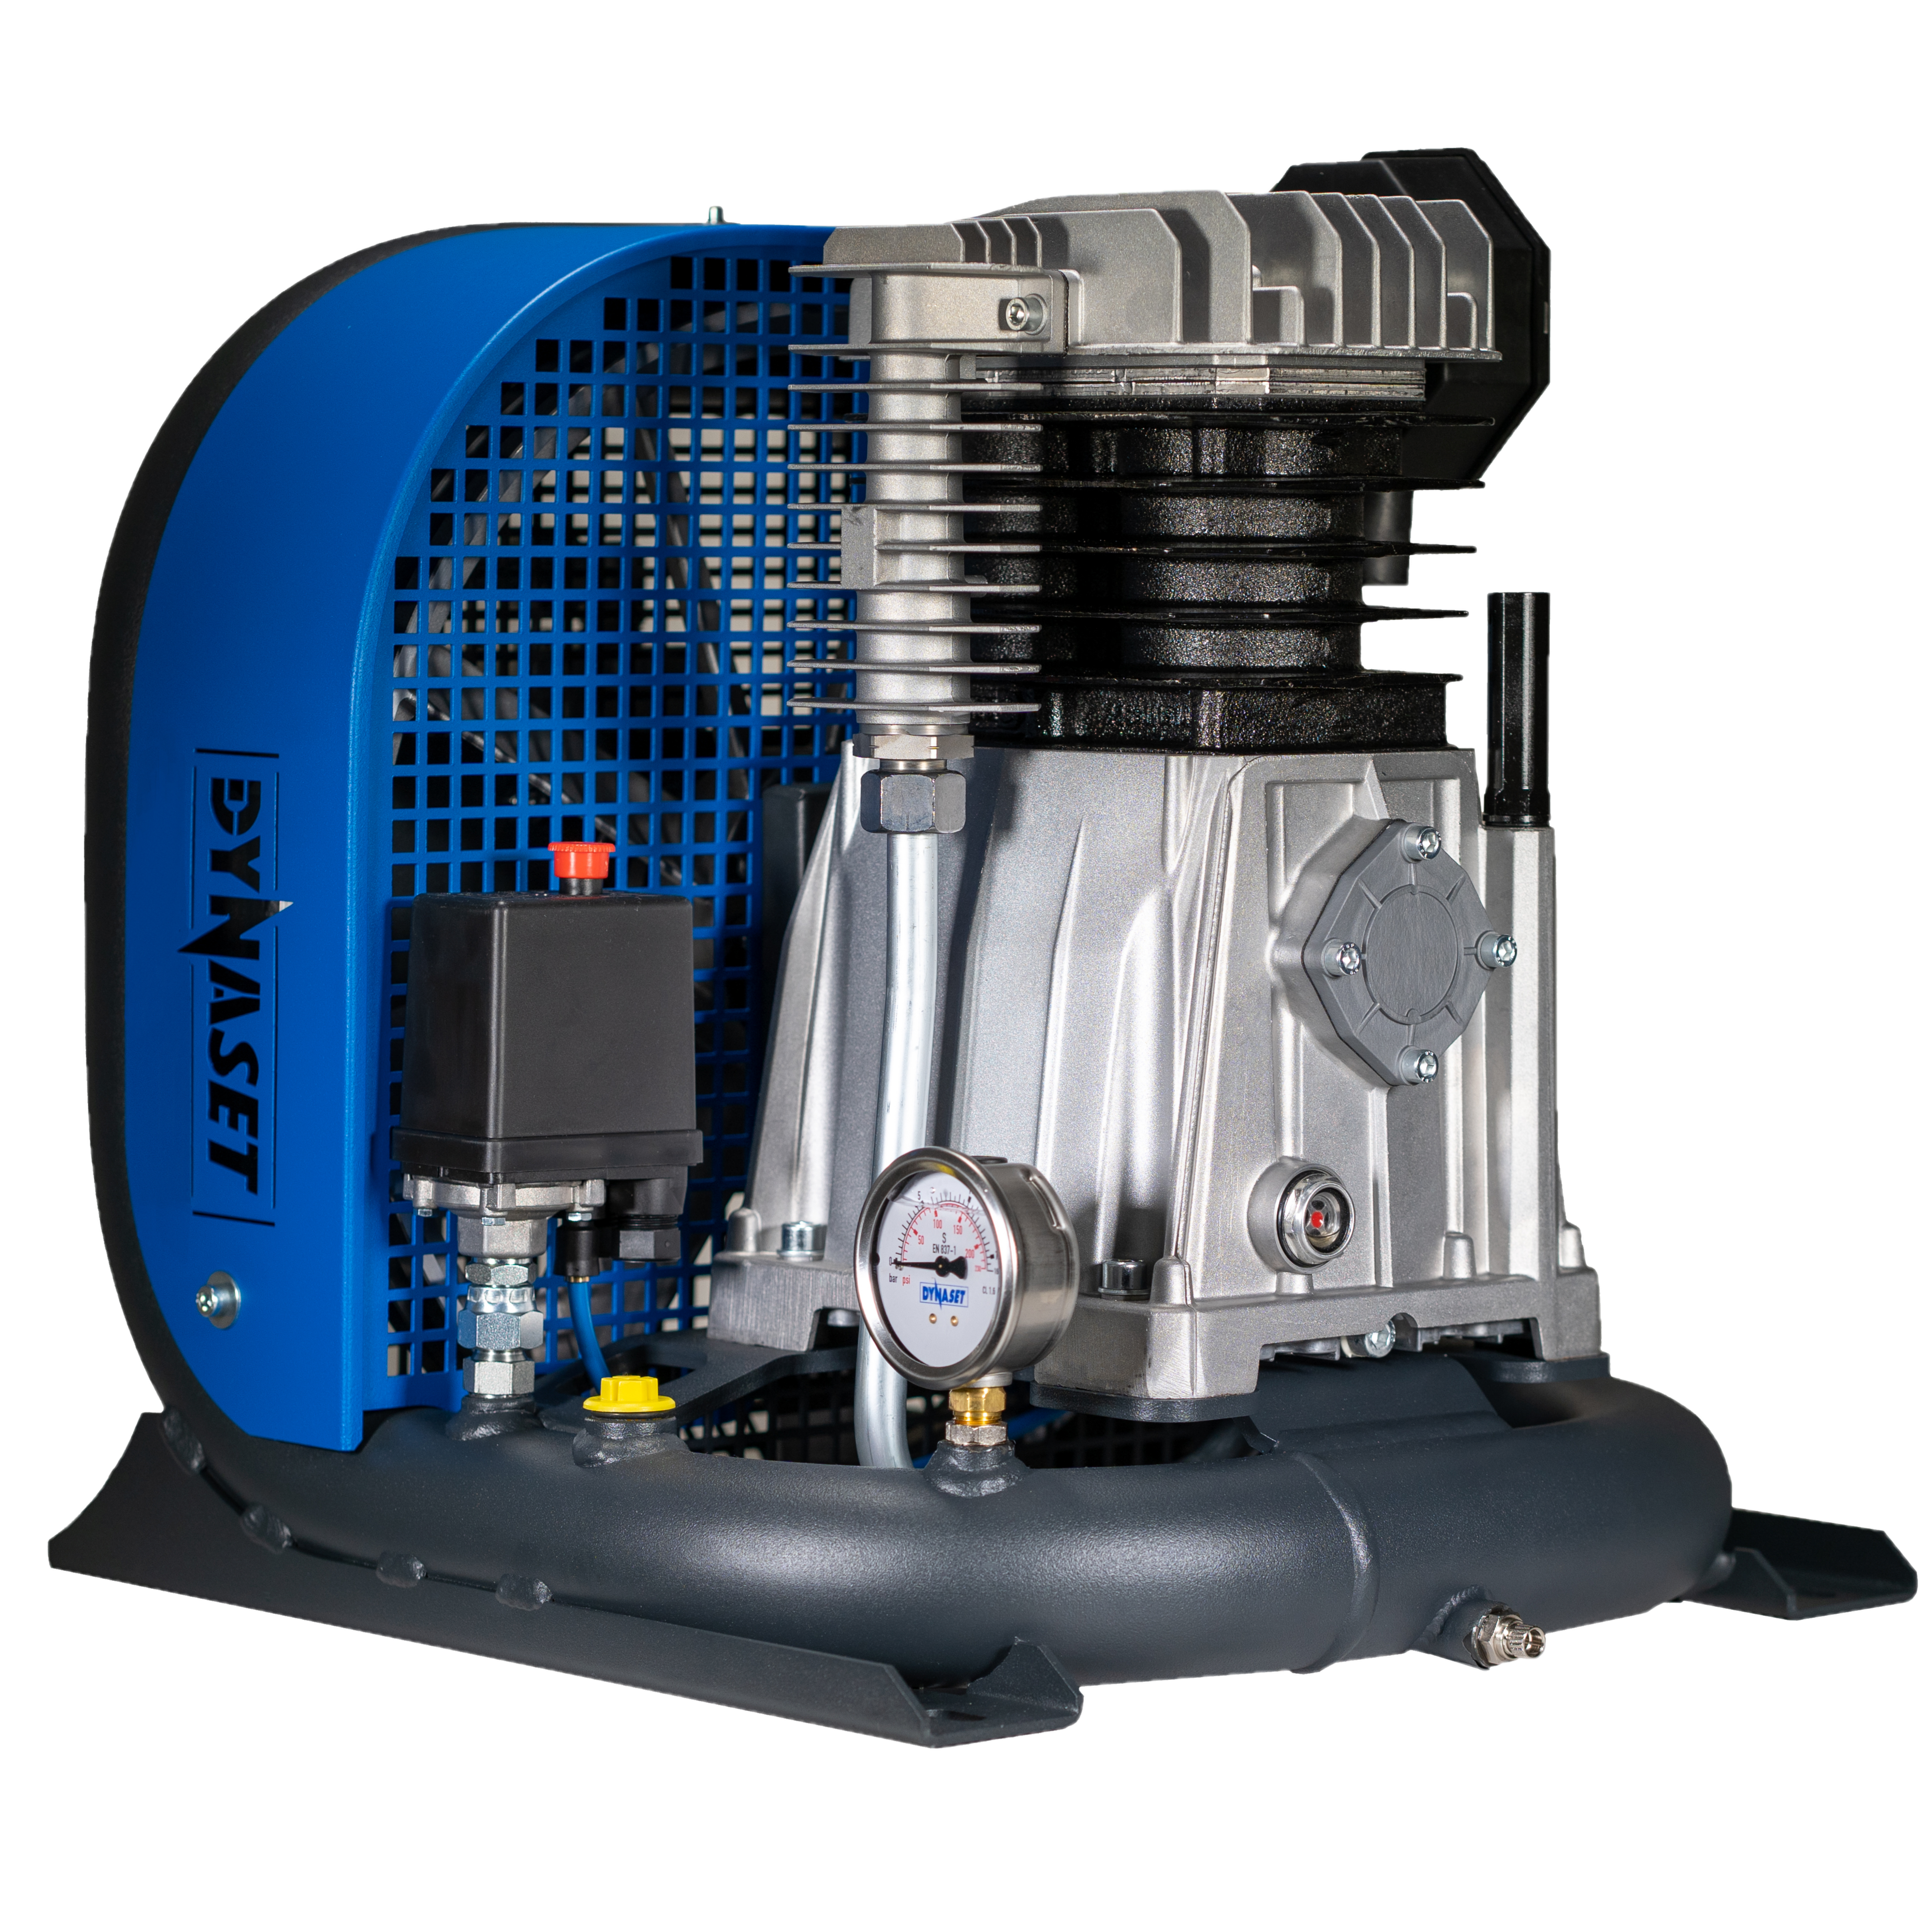 HK450 - Hydraulically driven pneumatic piston compressor 450 L/min. at max. 8 bar (116 PSI)